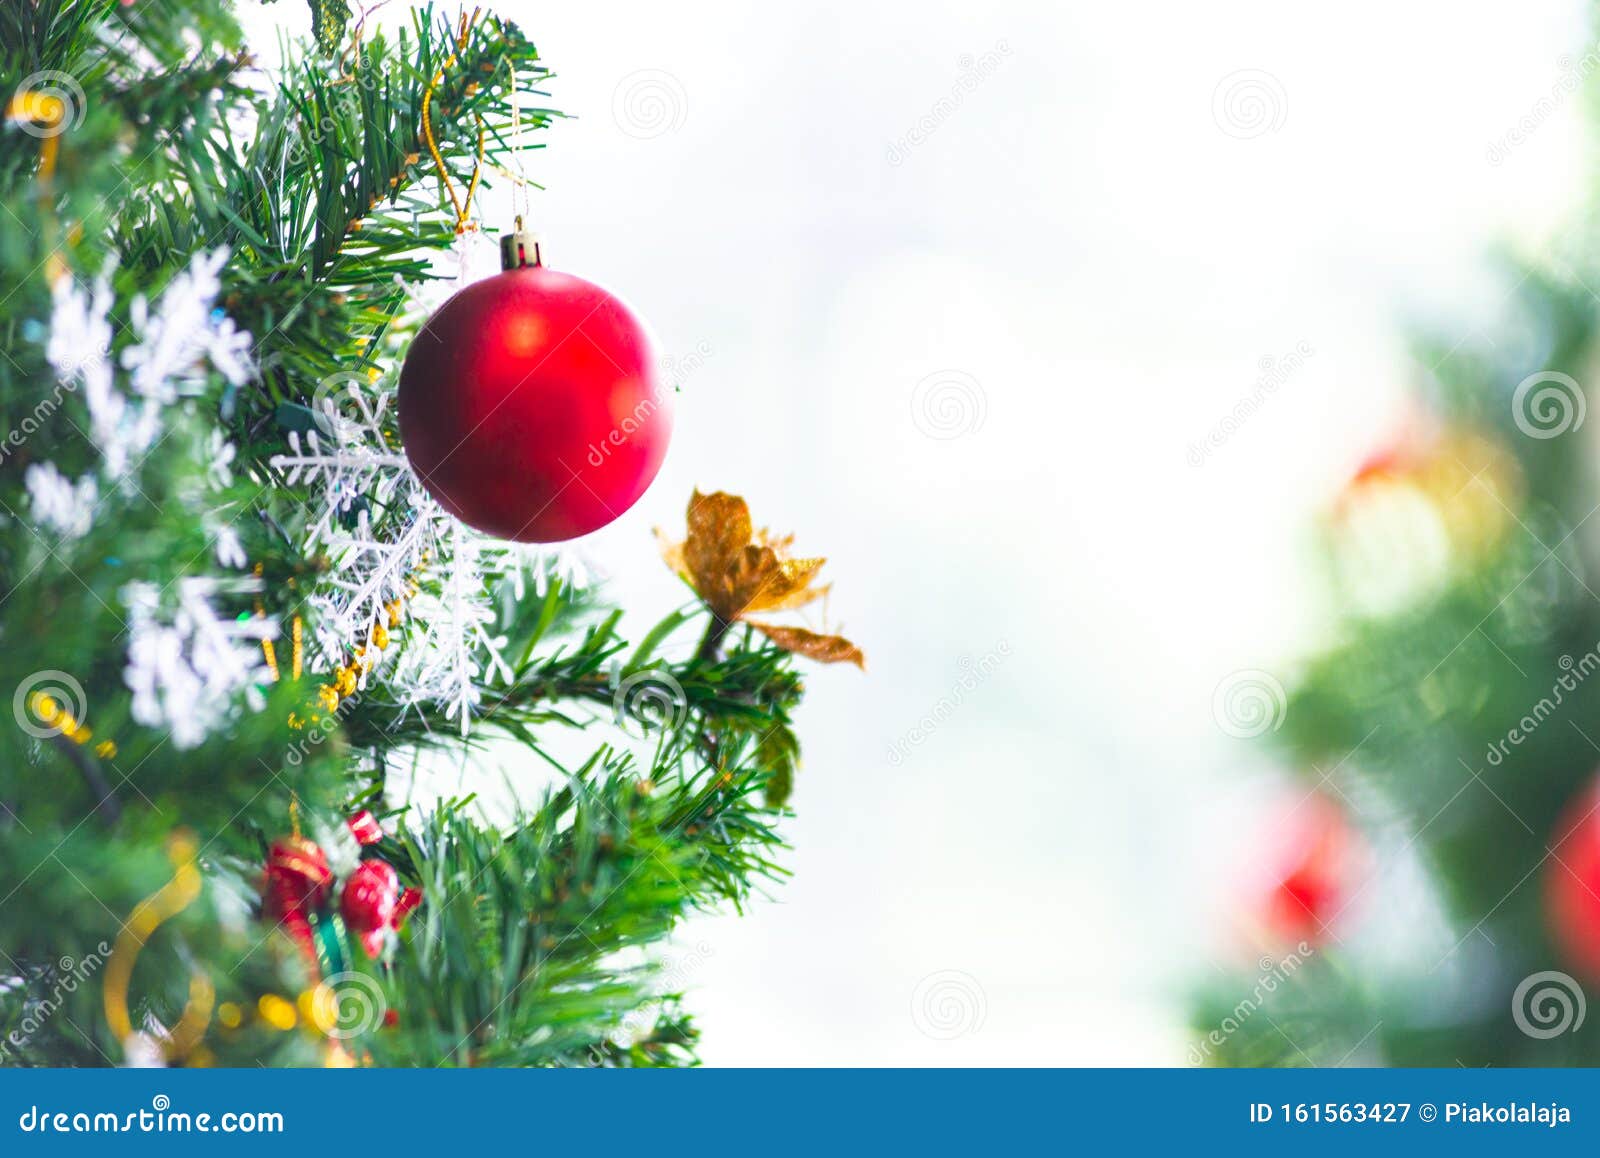 Conceito De Férias De Natal E Ano Novo Encerramento E Desfoque a Decoração  Das árvores De Natal Com Fitas Esferas E Ornamentos Imagem de Stock -  Imagem de feriado, vermelho: 161563427